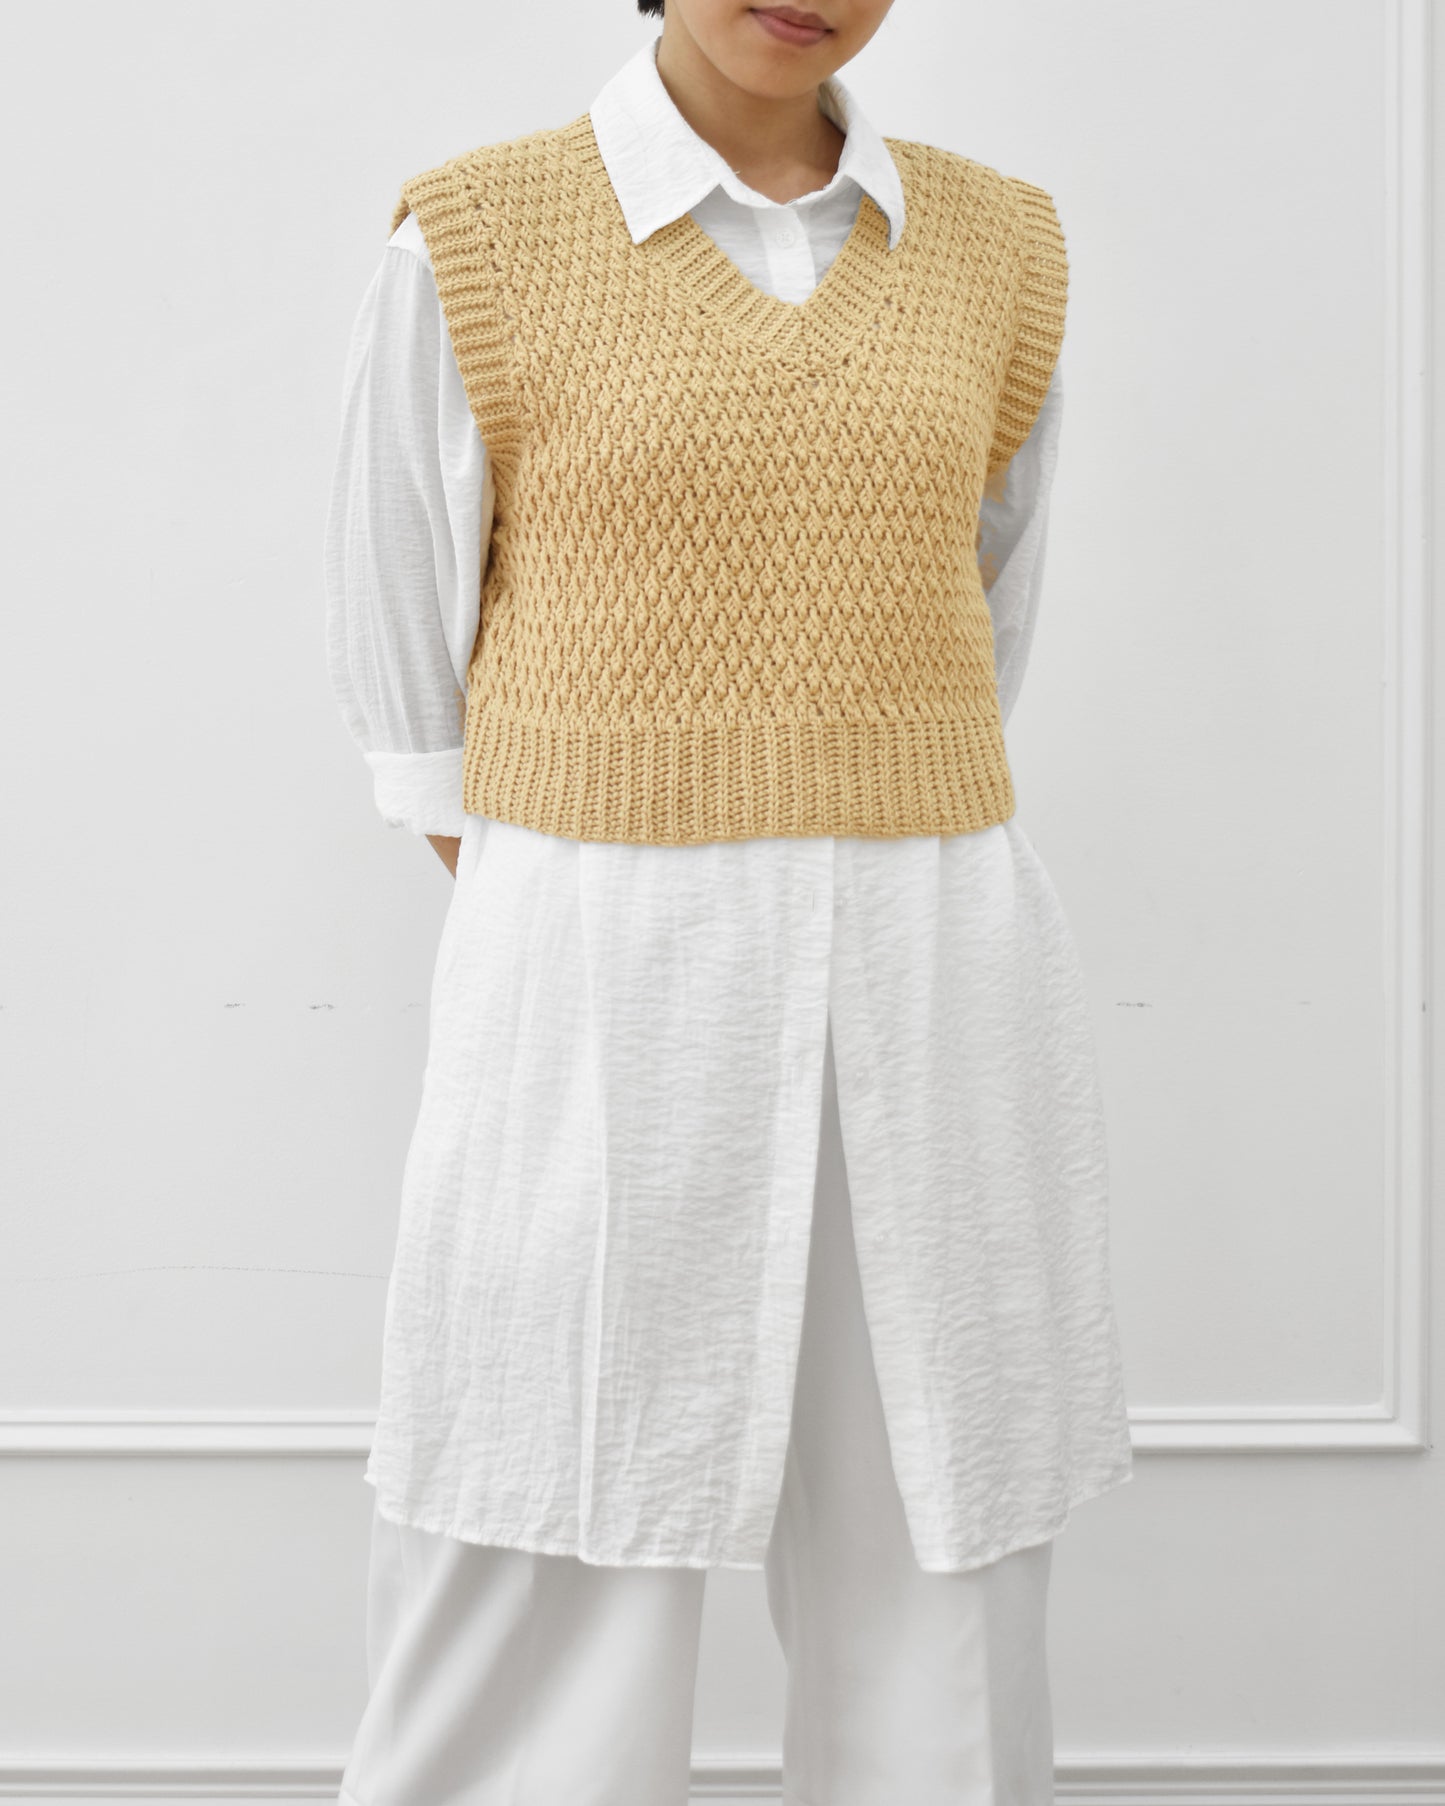 Vest No.17 | Crochet pattern